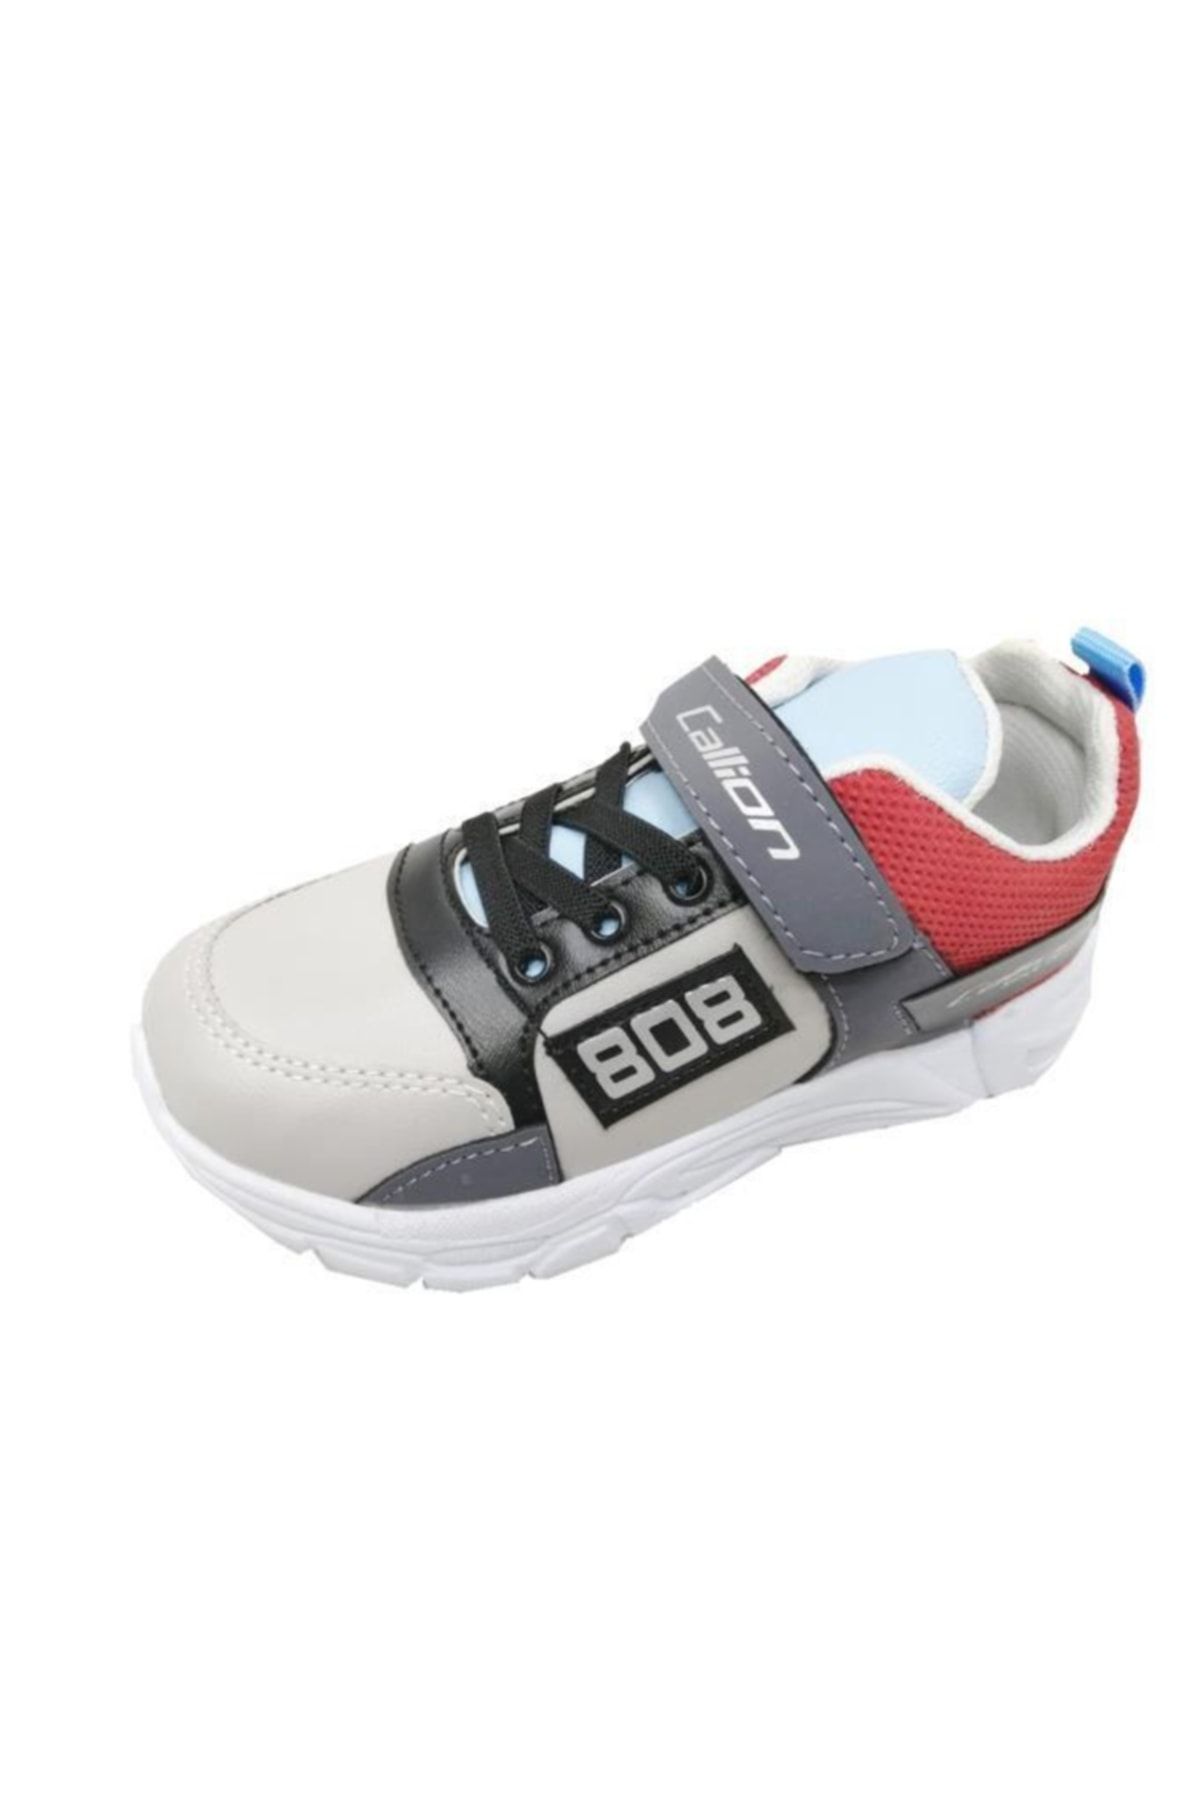 Callion 808 Deri Cırtlı Filet Çocuk Spor Ayakkabı Buz Mavi Kırmızı